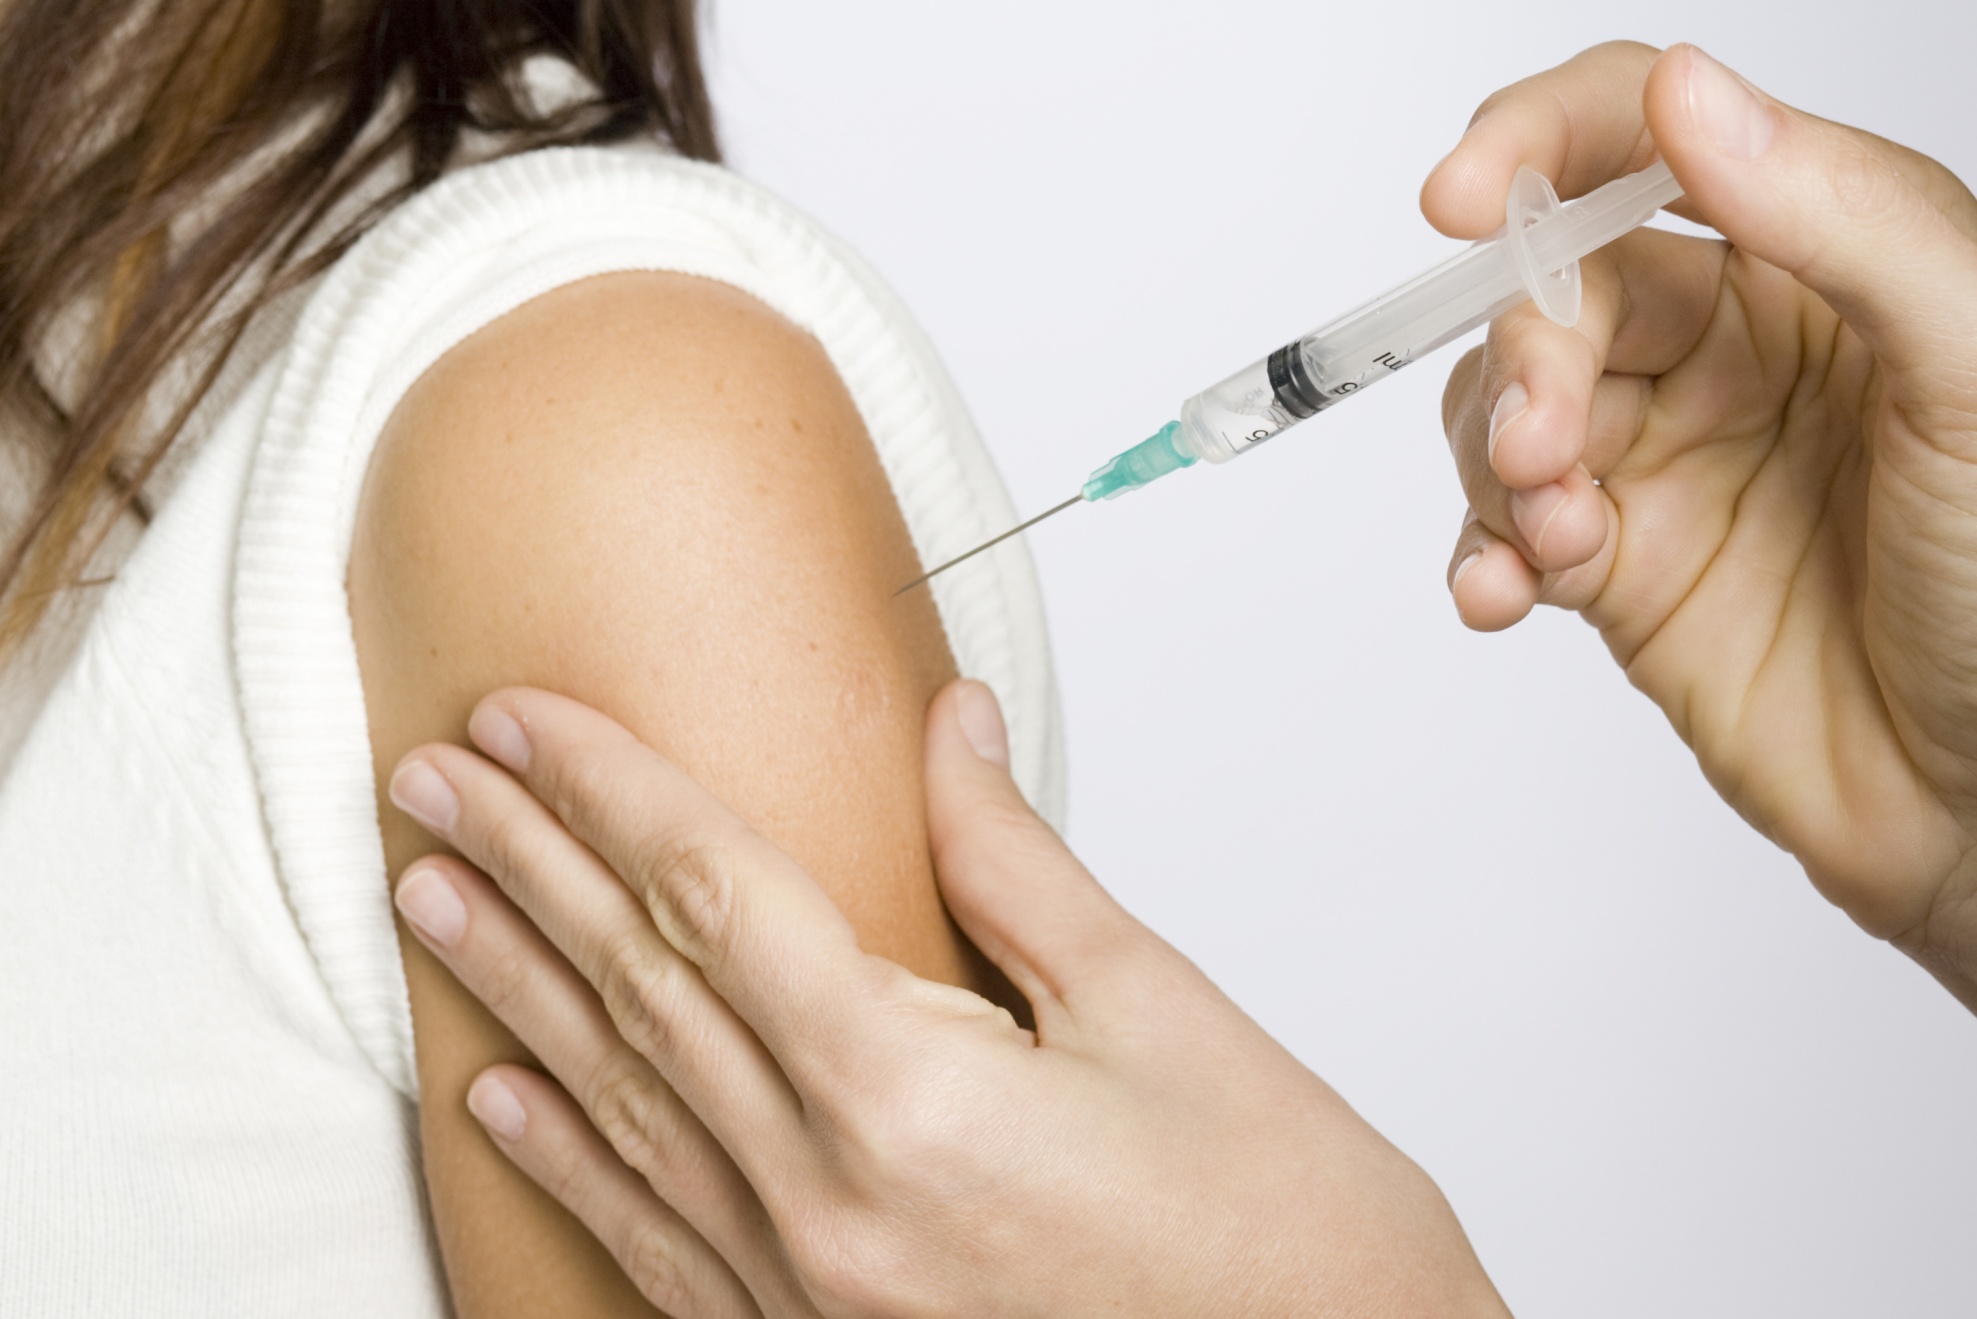 CCSS y Salud afinan detalles para introducir vacuna contra virus del Papiloma Humano en esquema público